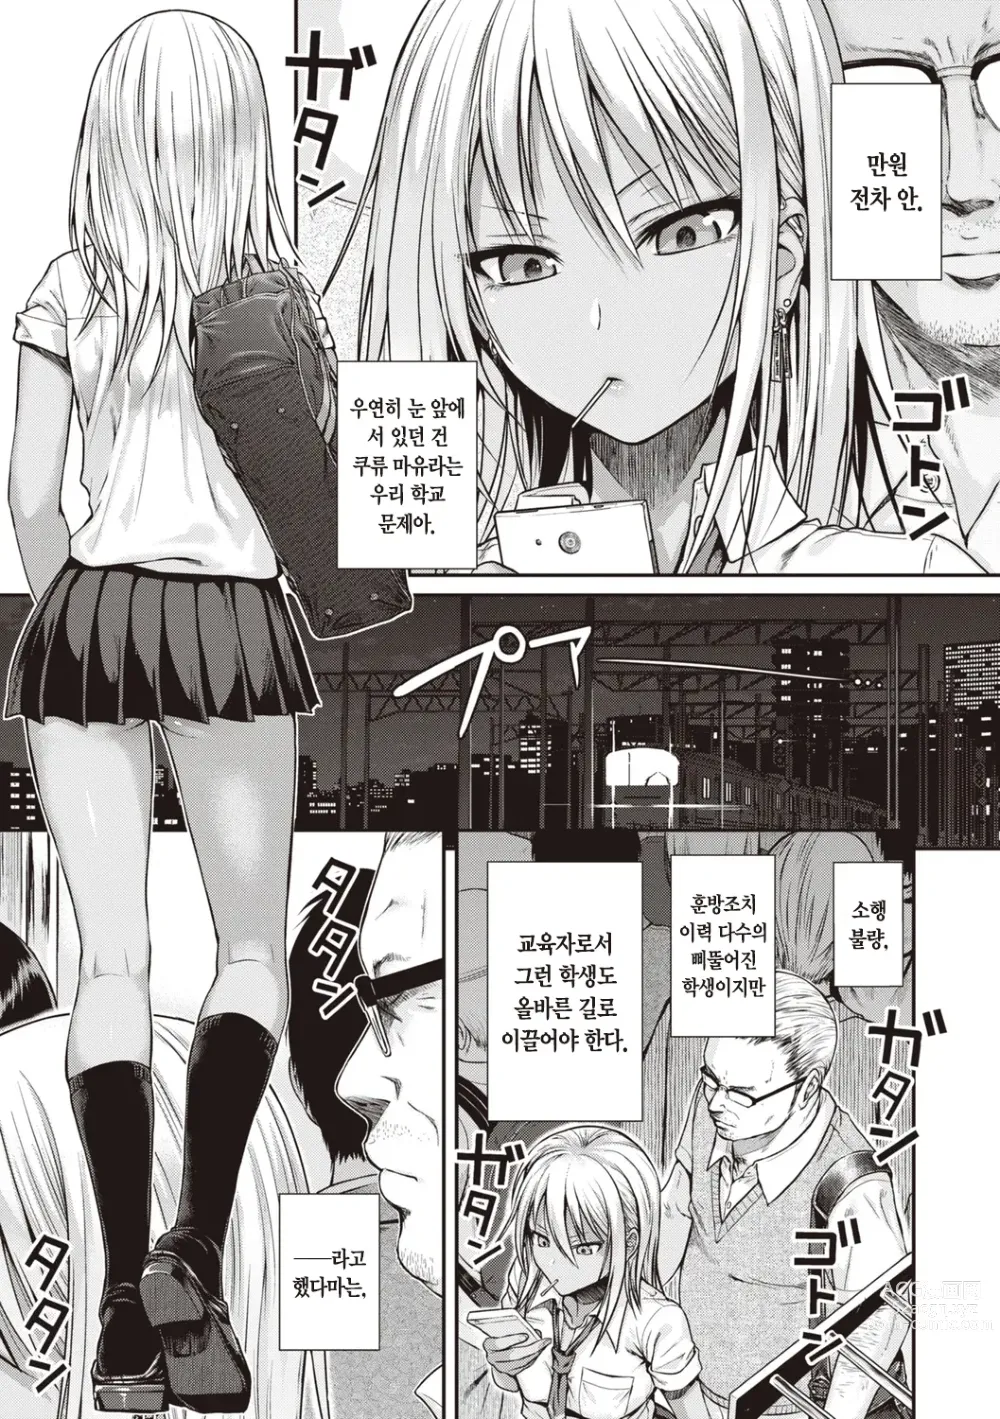 Page 5 of manga 프로토타입 틴즈